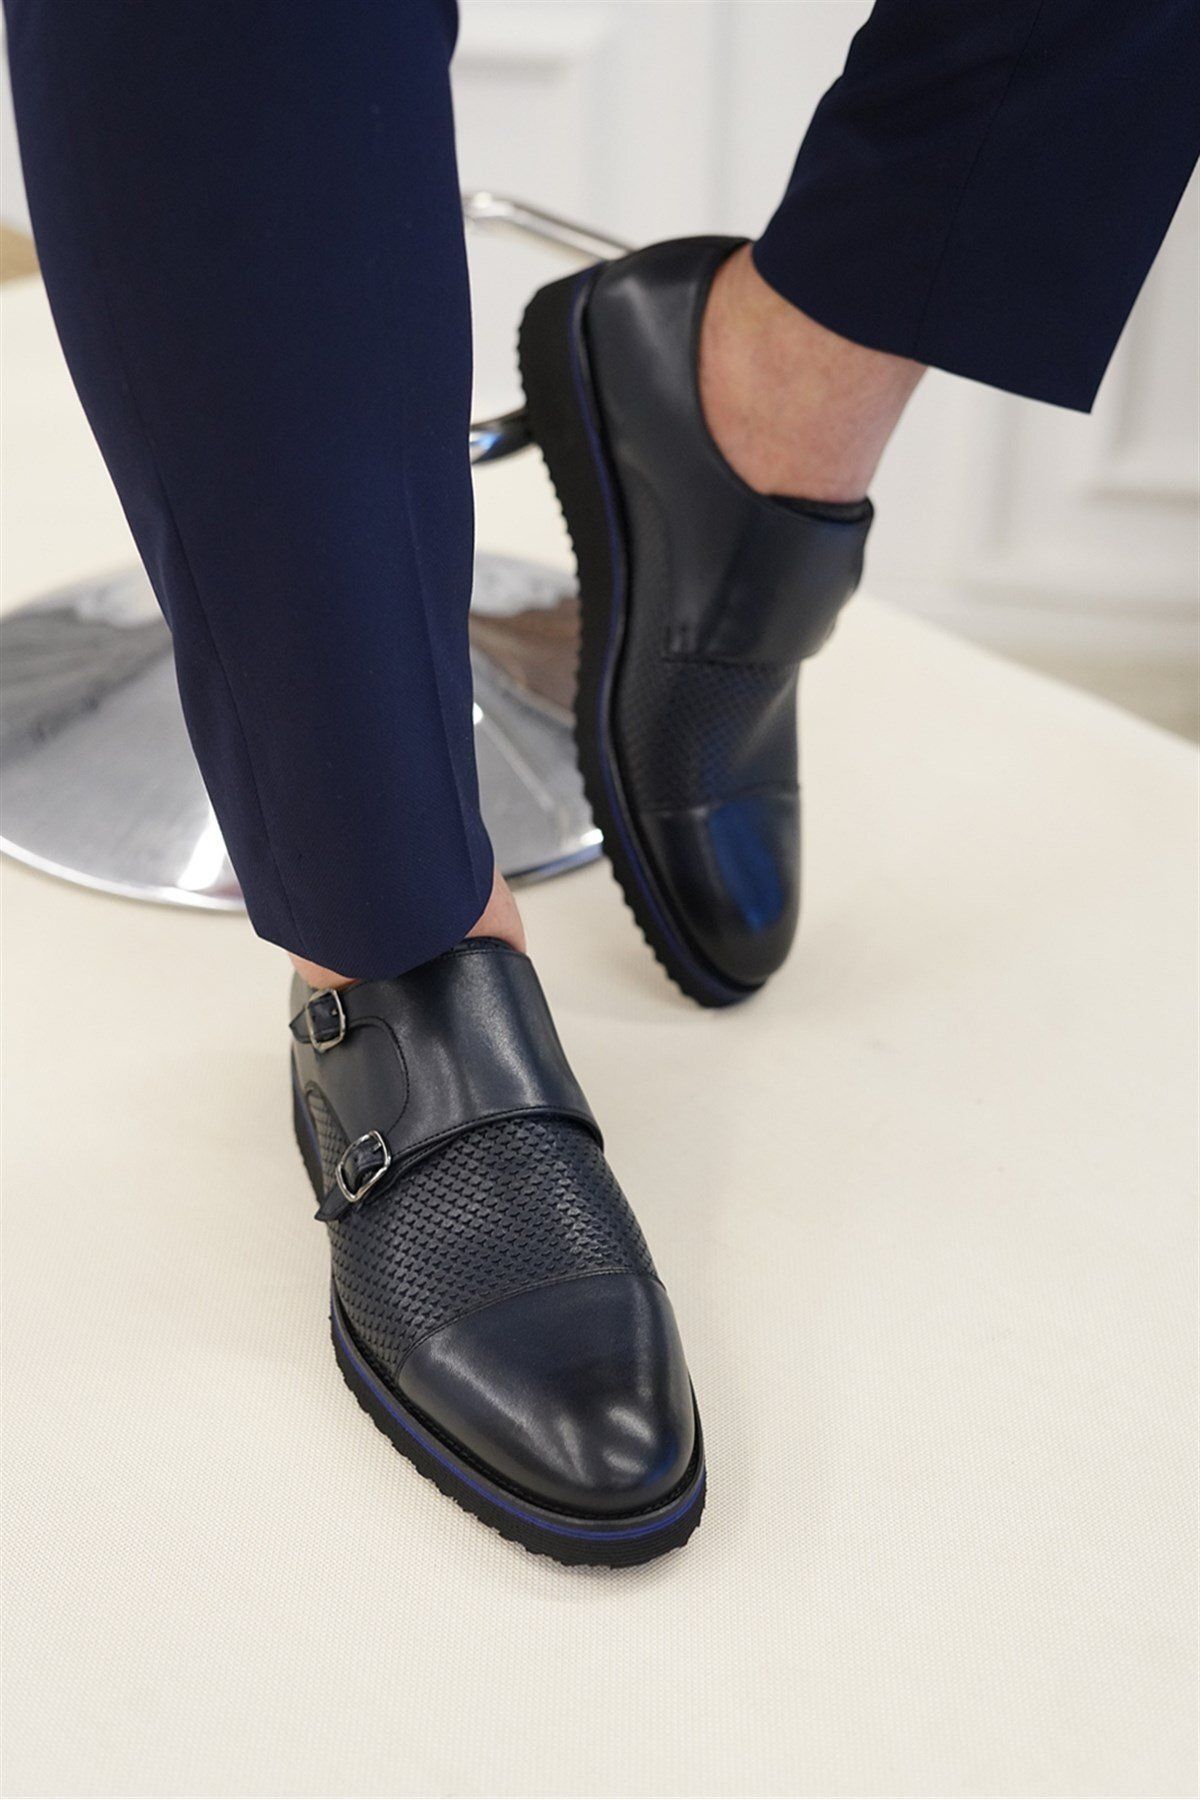 TerziAdemAltun İtalyan Stil Iç Dış Naturel Deri Erkek Ayakkabı Lacivert T5654